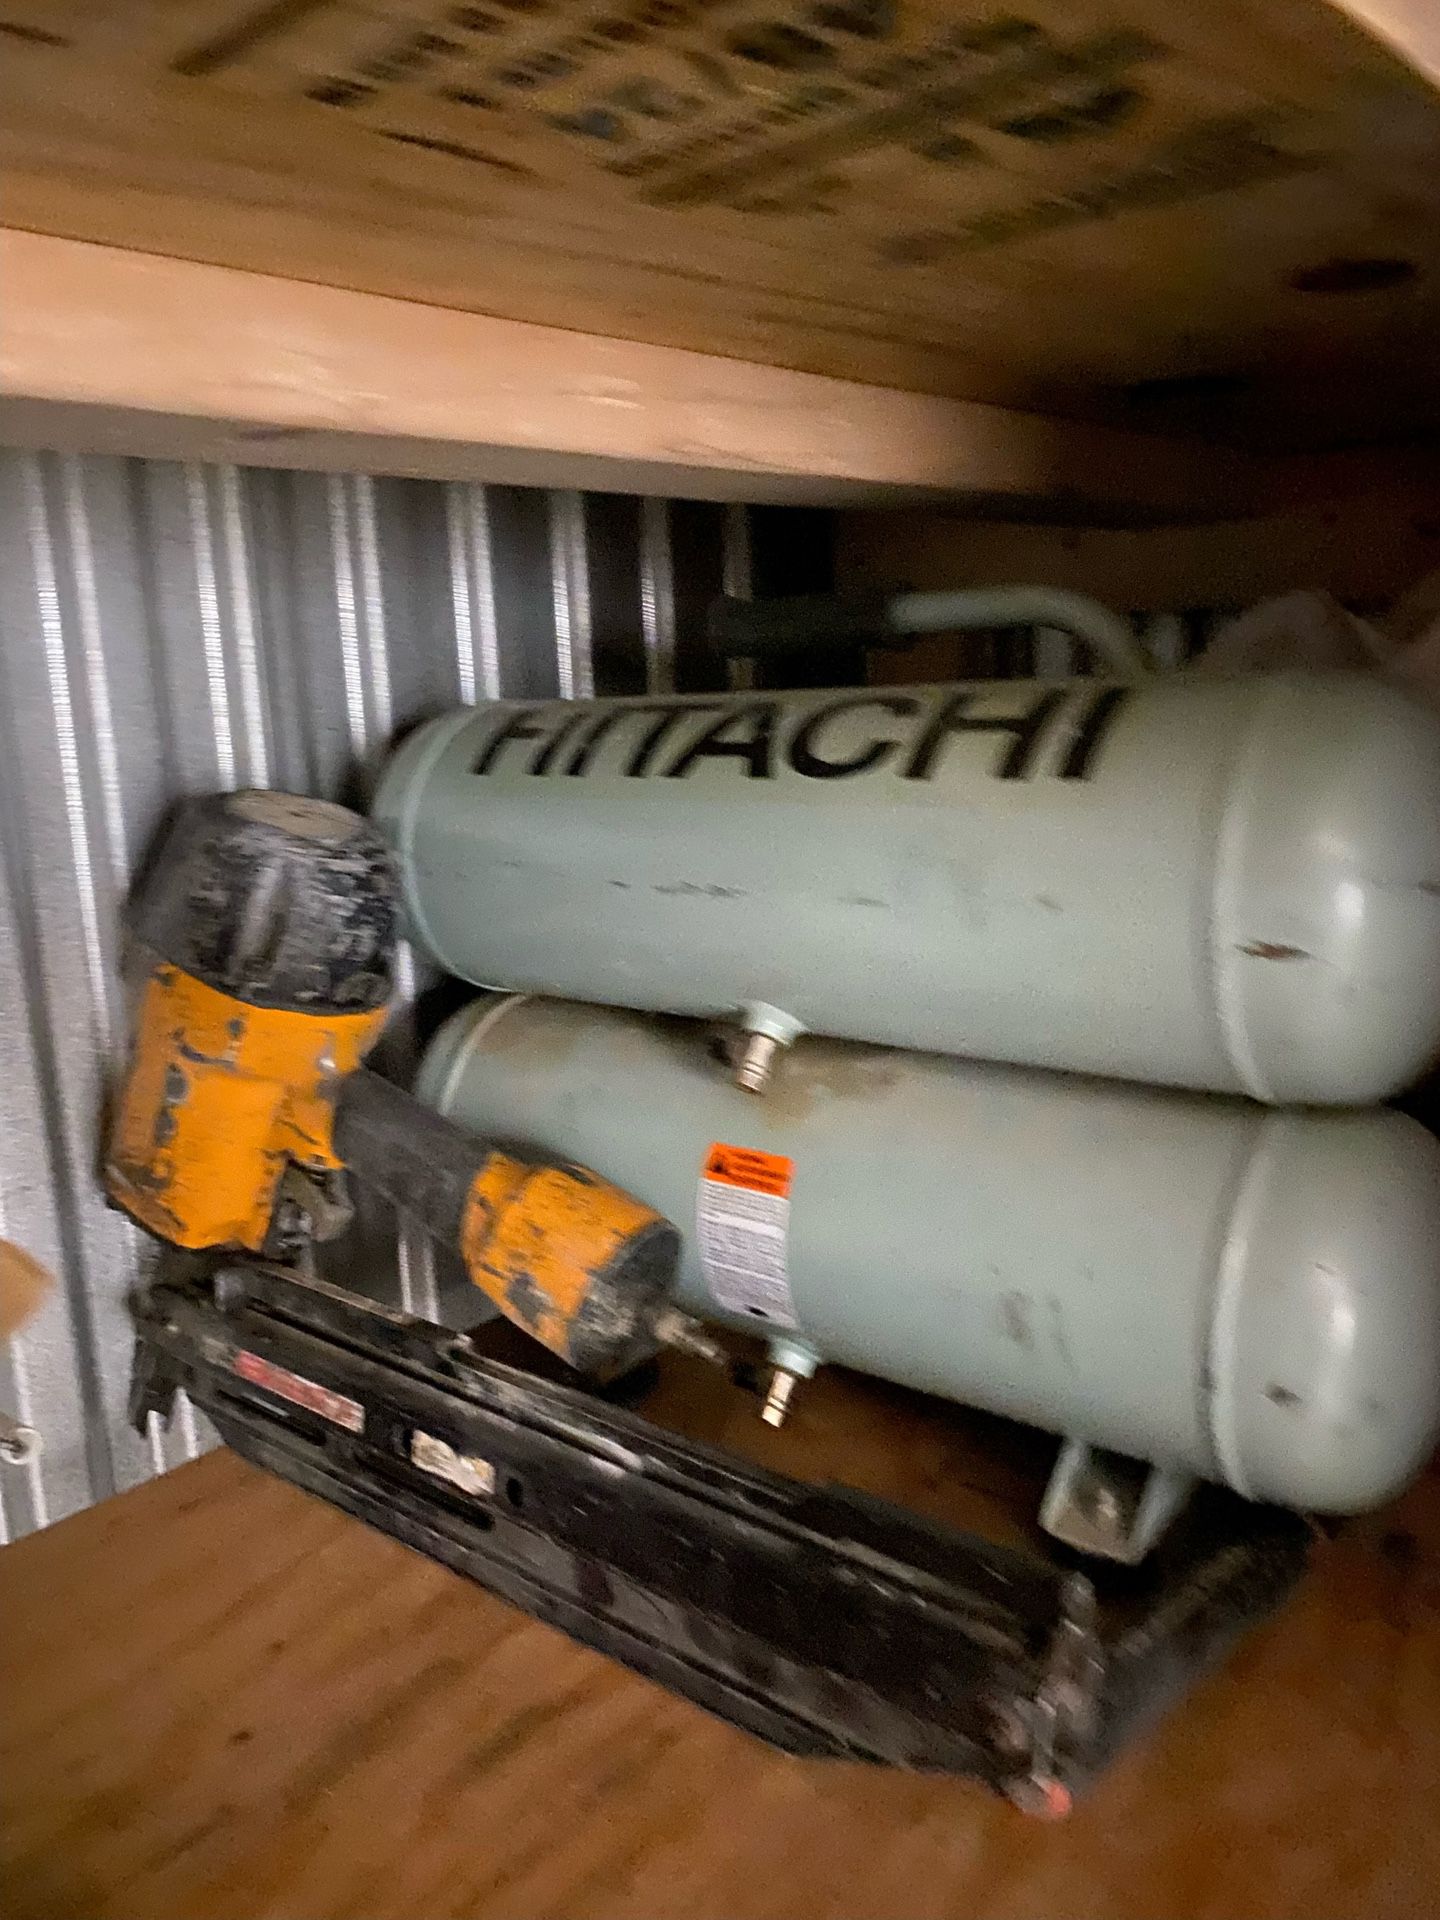 Hitachi 4 gallon portable electric twin stack air compressor